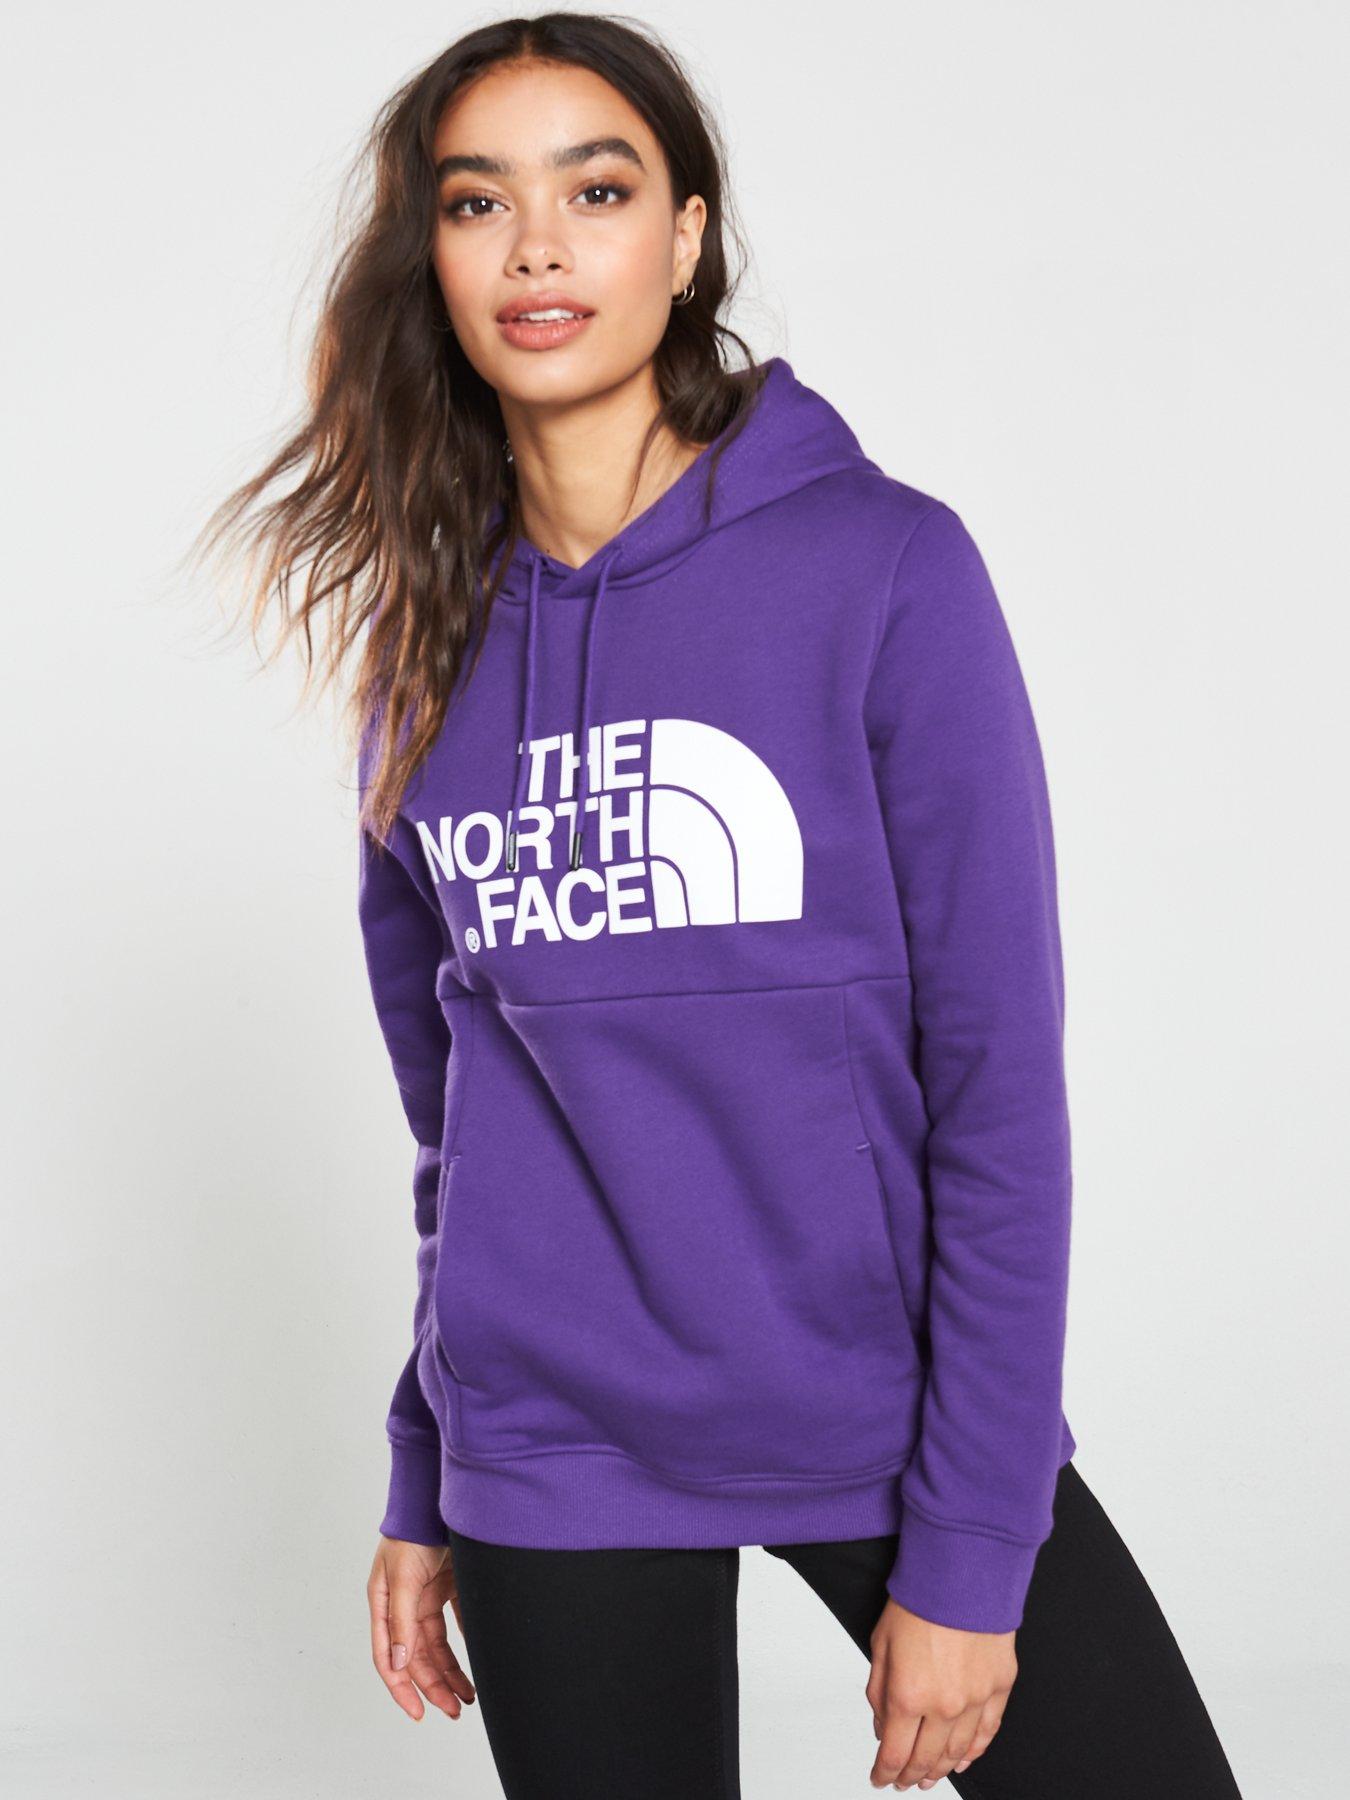 women's new drew peak hoodie